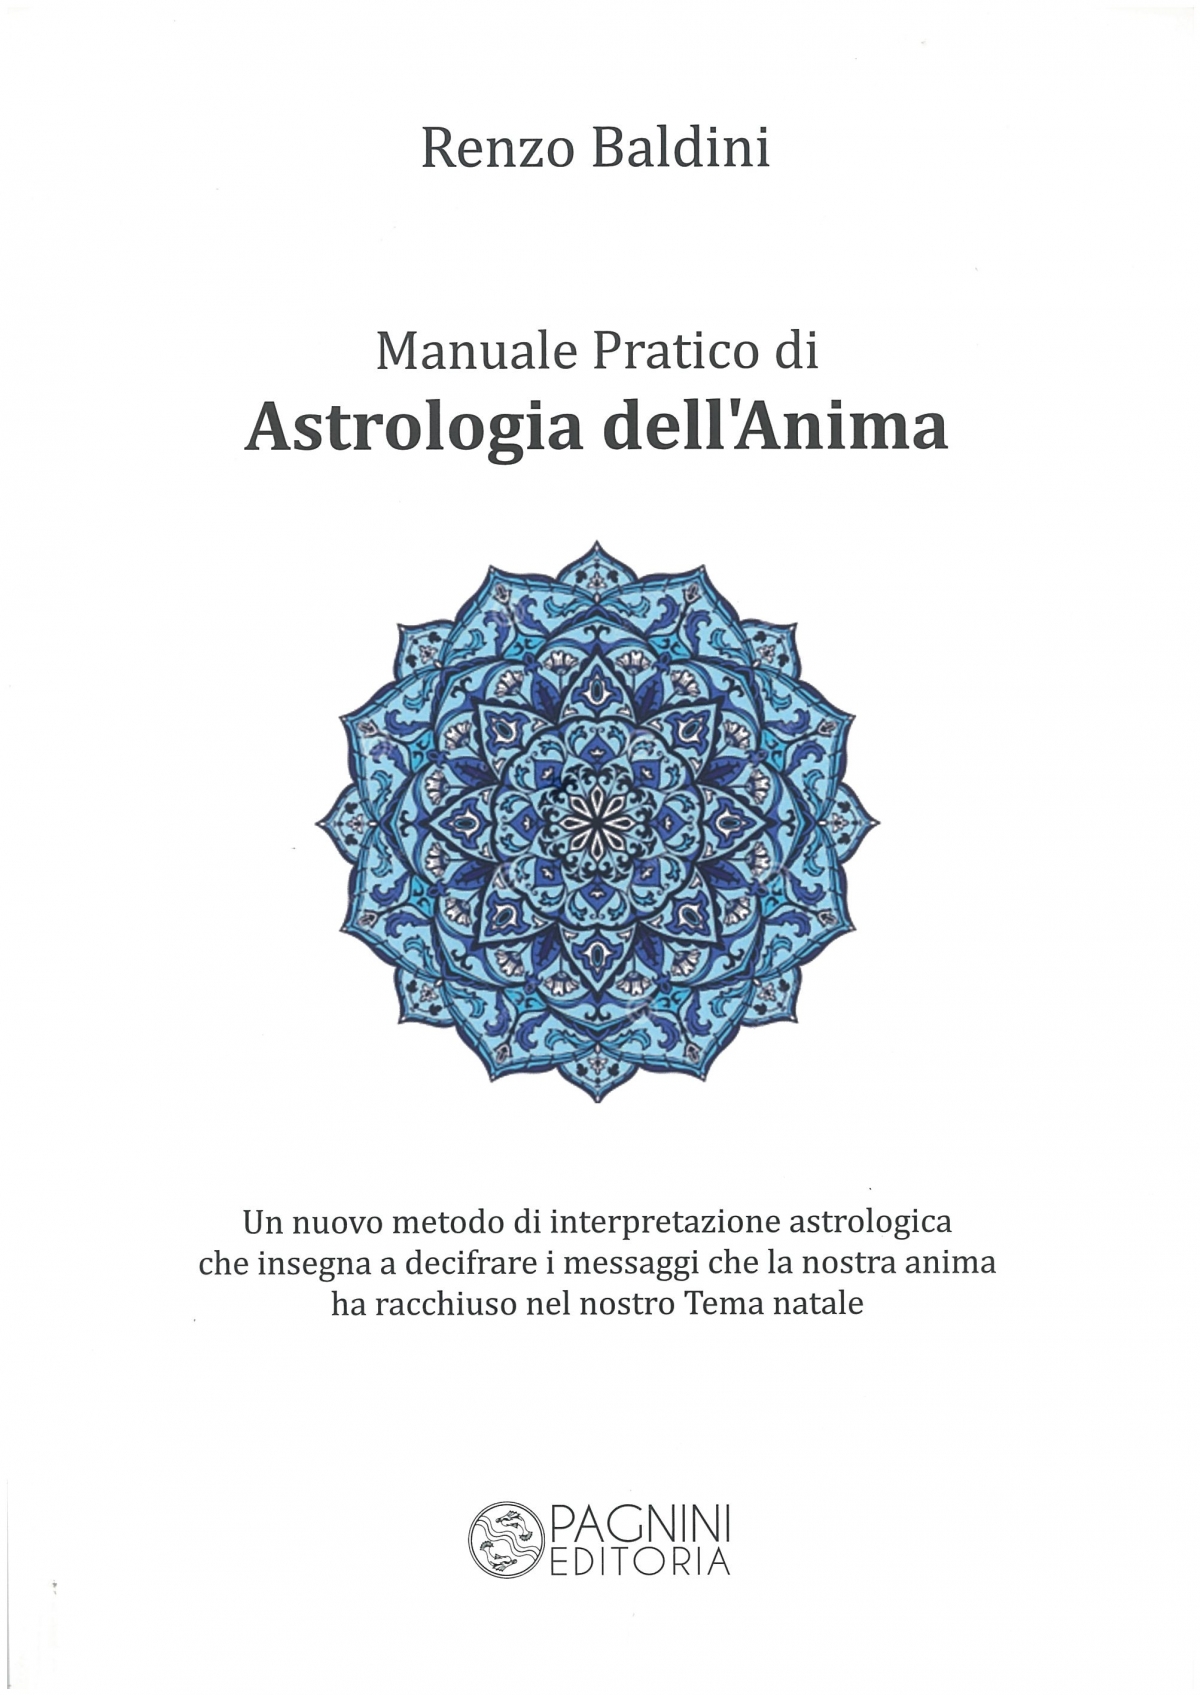 Manuale Pratico di Astrologia dell’Anima